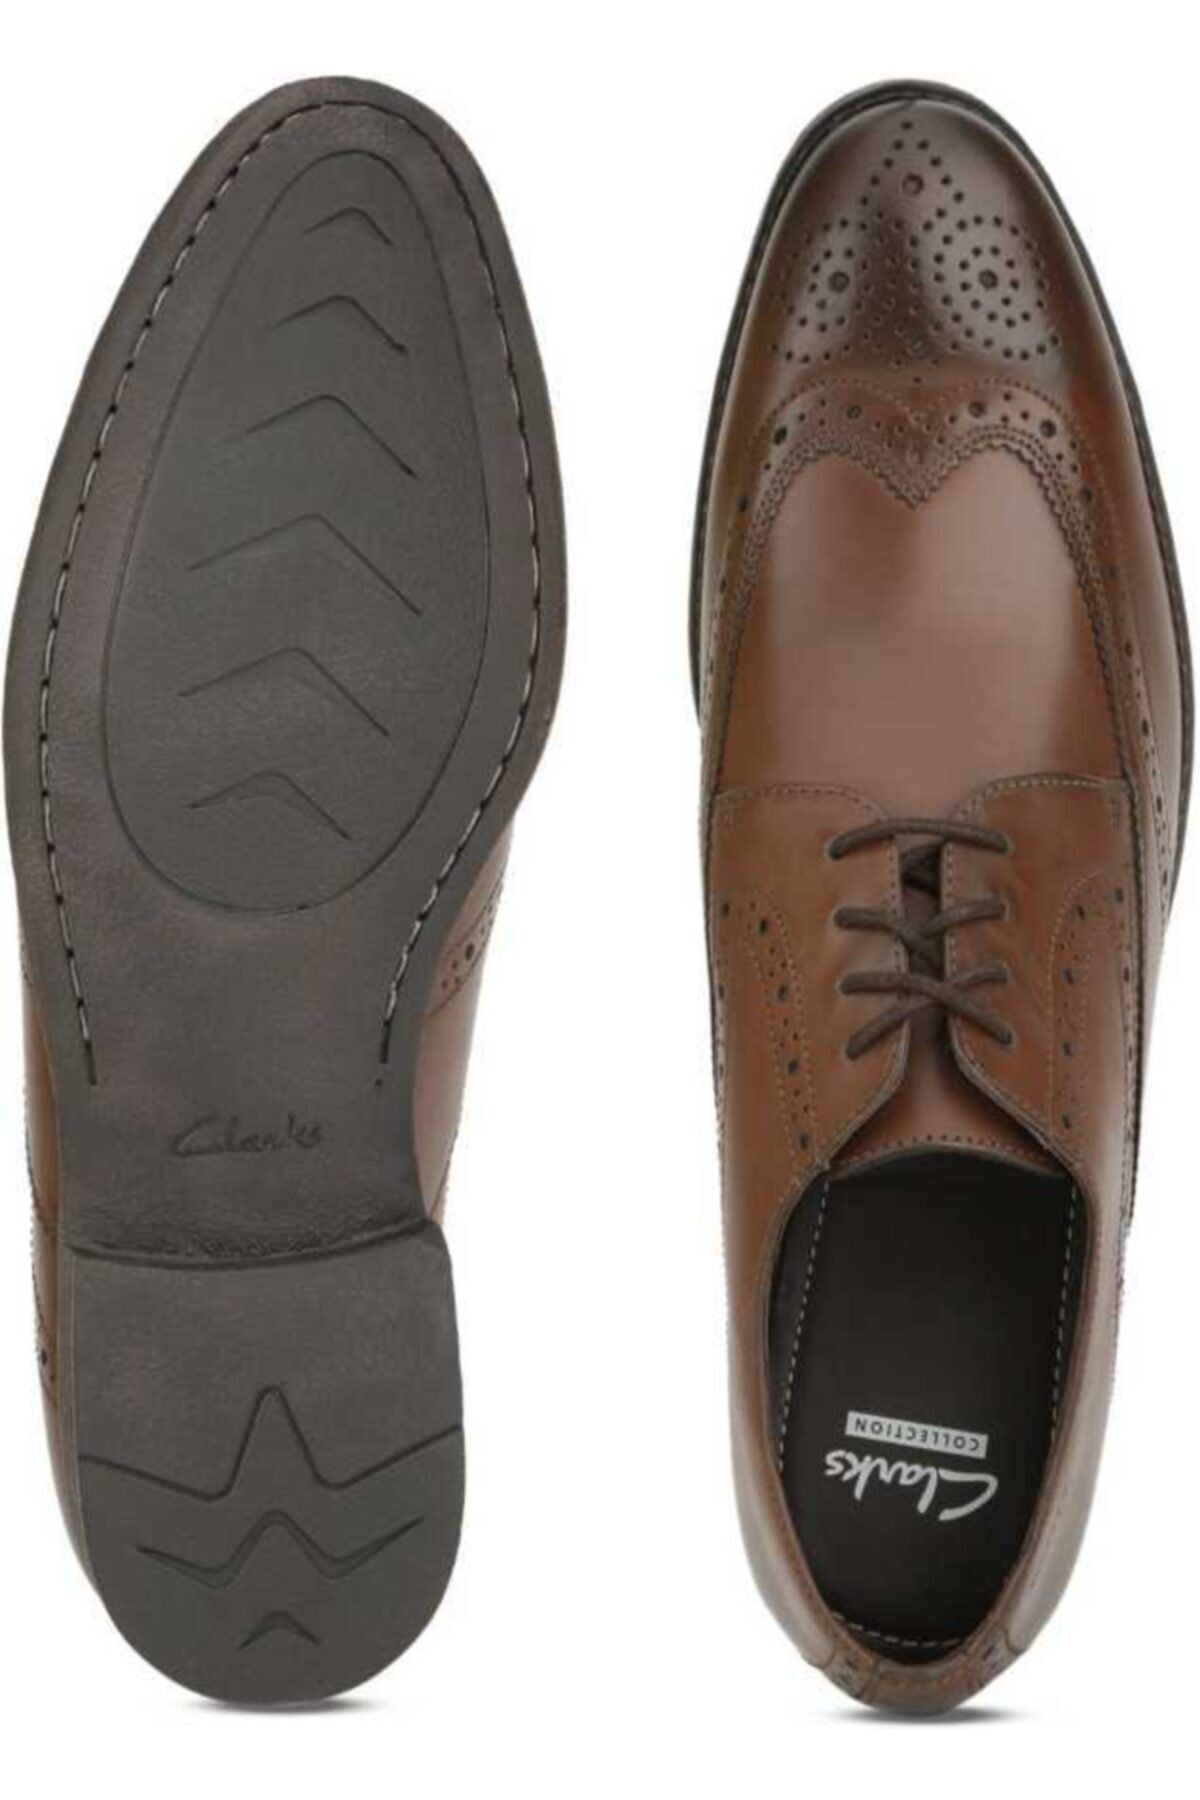 CLARKS Erkek Bağcıklı Ayakkabı Şık Rahat Ortholite Chart Limit Tan Leather